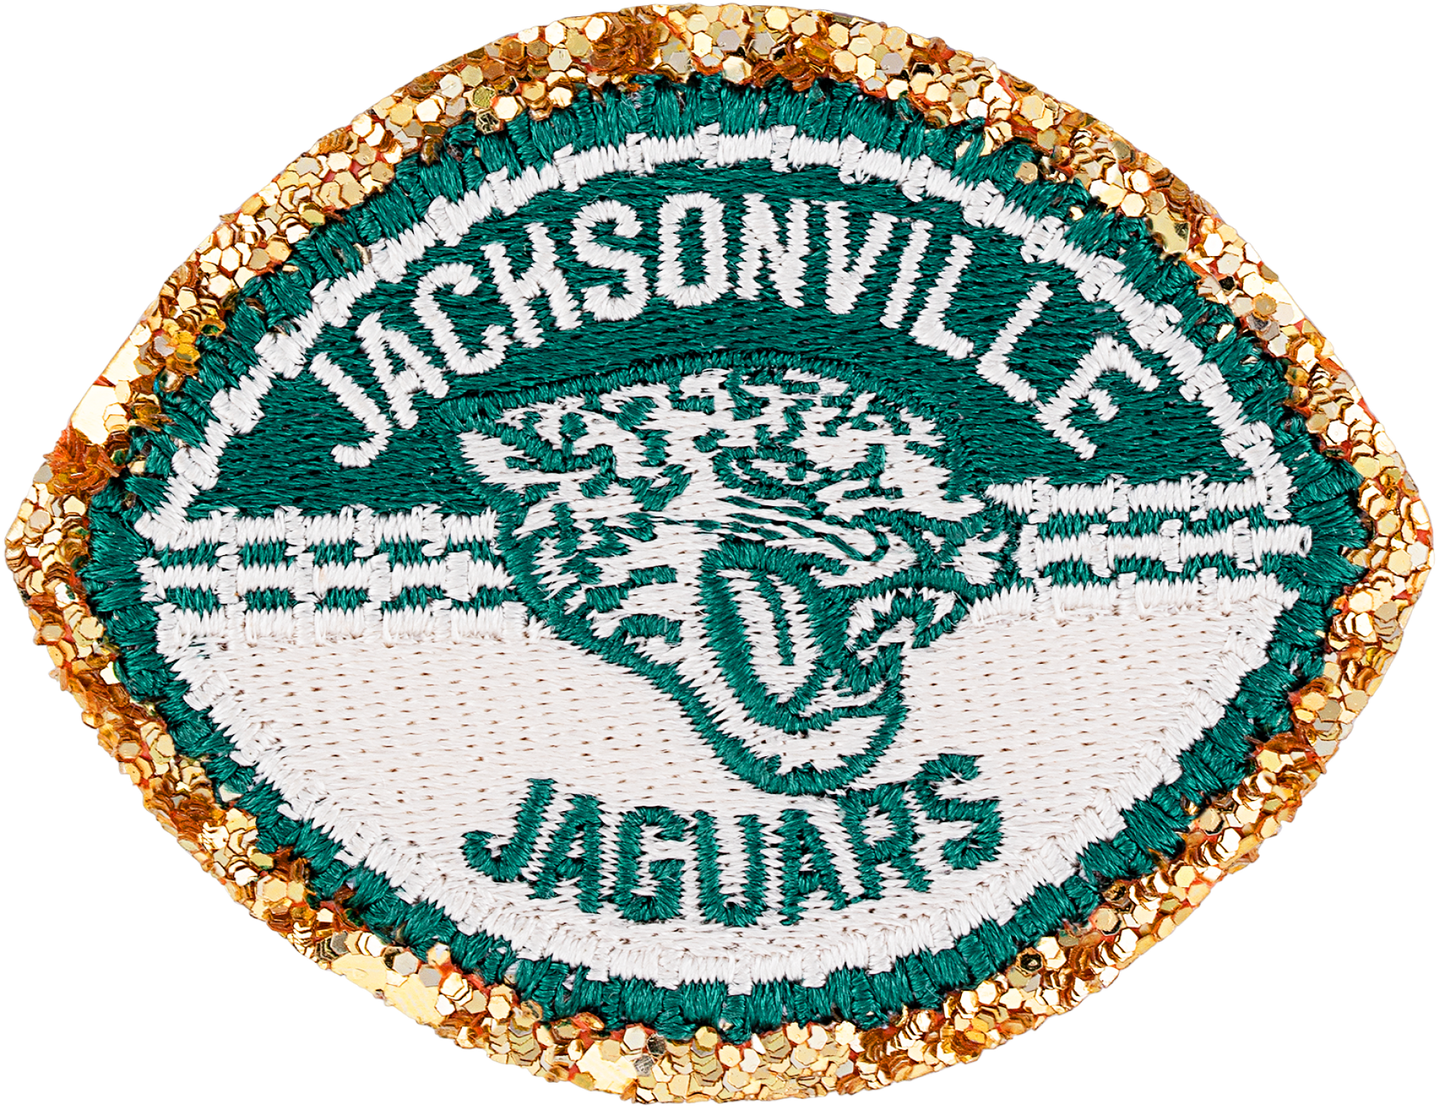 Jacksonville Jaguars Patch